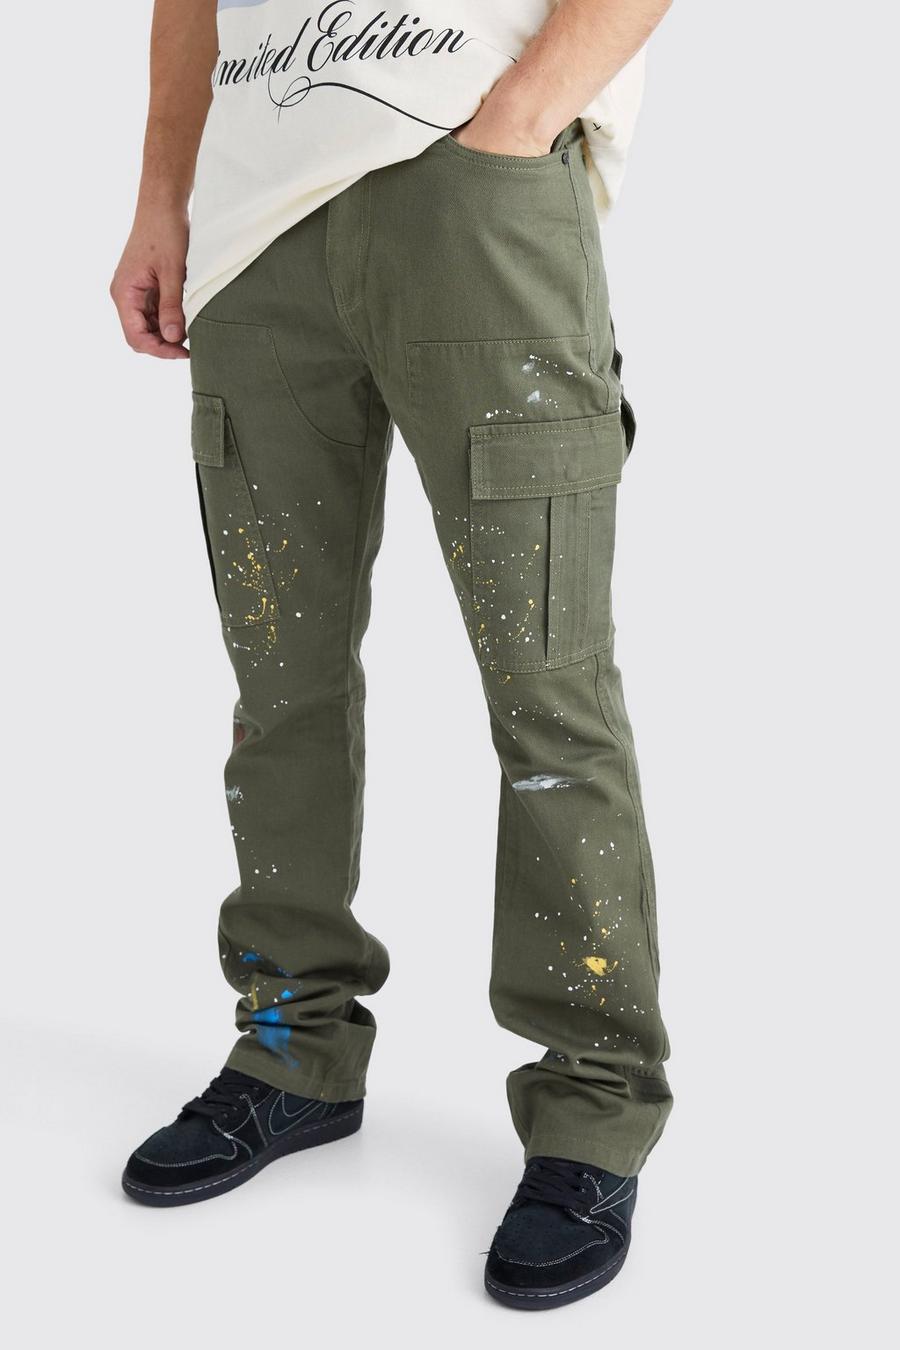 Pantaloni Cargo Tall Slim Fit con inserti e schizzi di colore, Khaki caqui